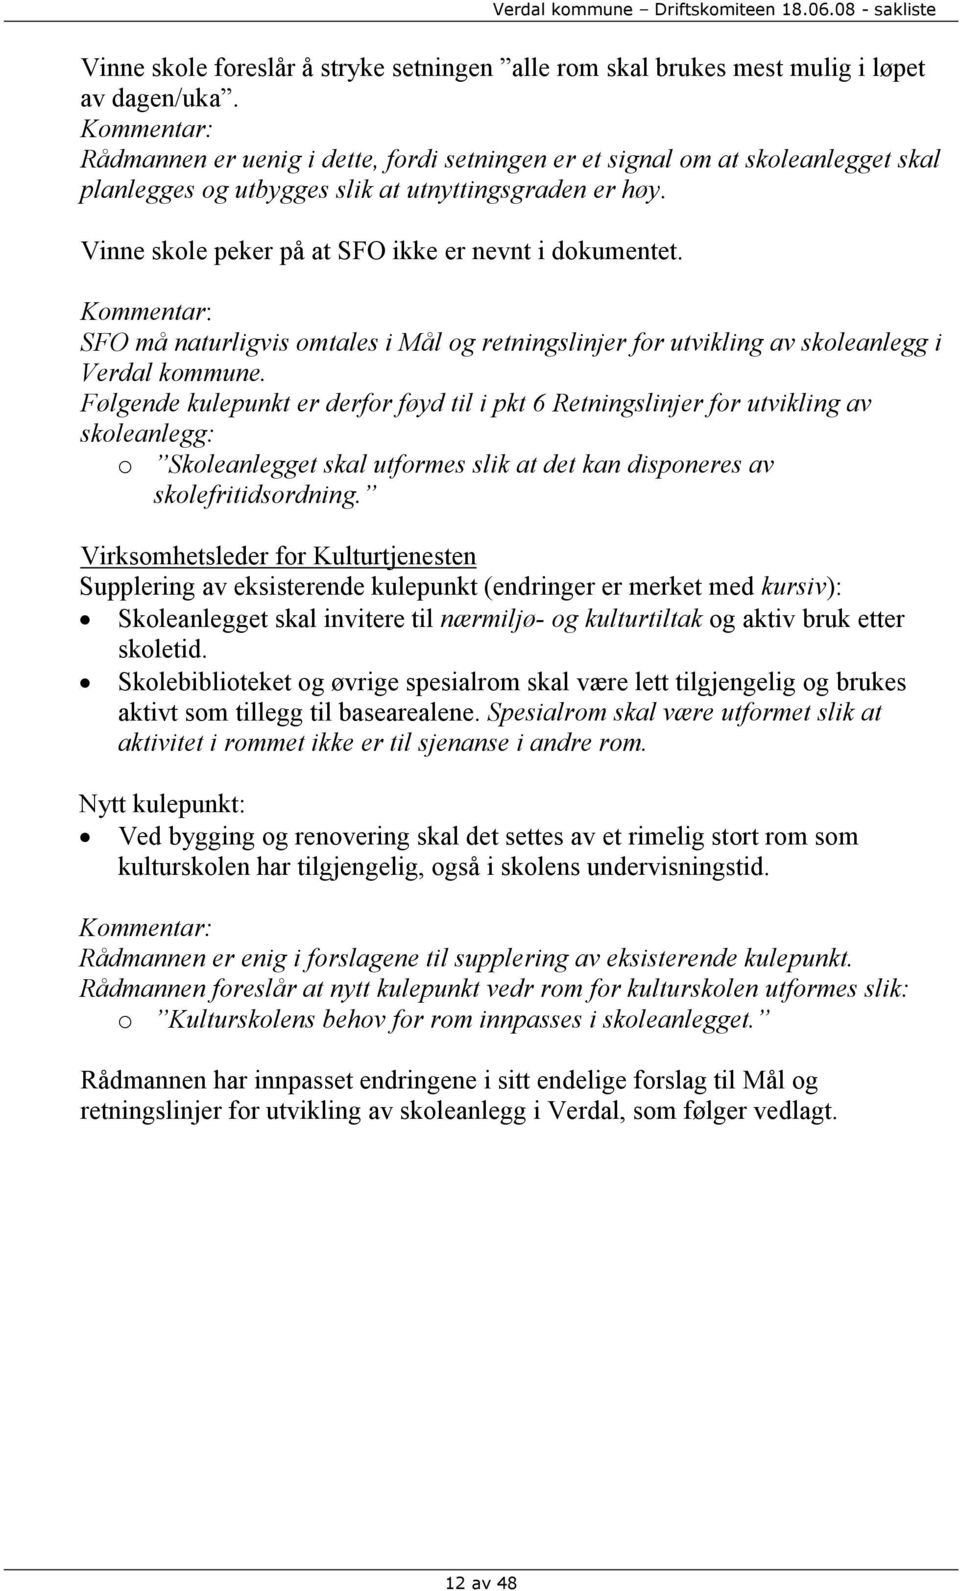 Vinne skole peker på at SFO ikke er nevnt i dokumentet. Kommentar: SFO må naturligvis omtales i Mål og retningslinjer for utvikling av skoleanlegg i Verdal kommune.